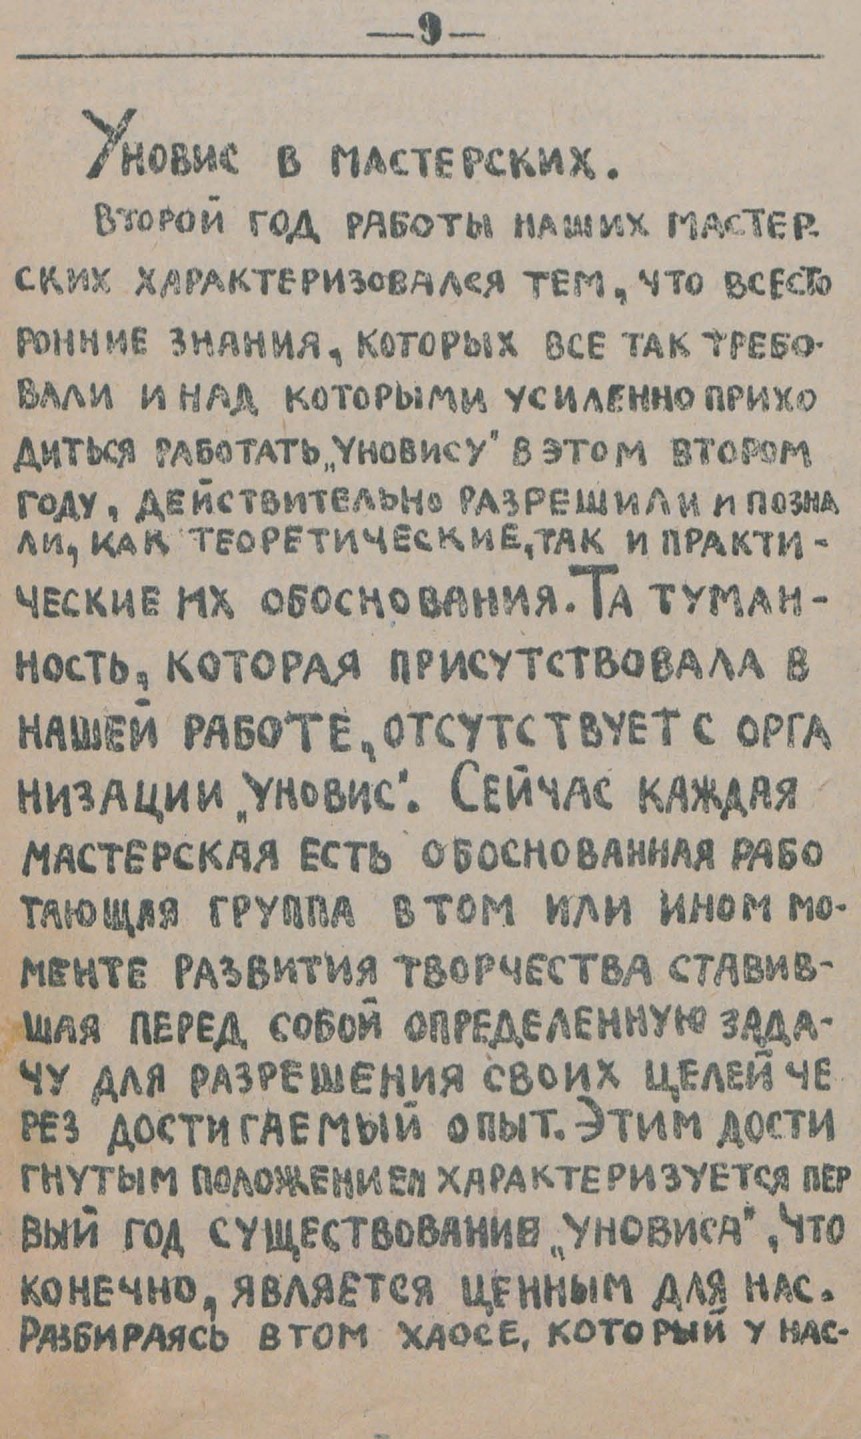 „Уновис“. — 2-е издание Витебского творкома „Уновис“. — Витебск : Уновис, 1921